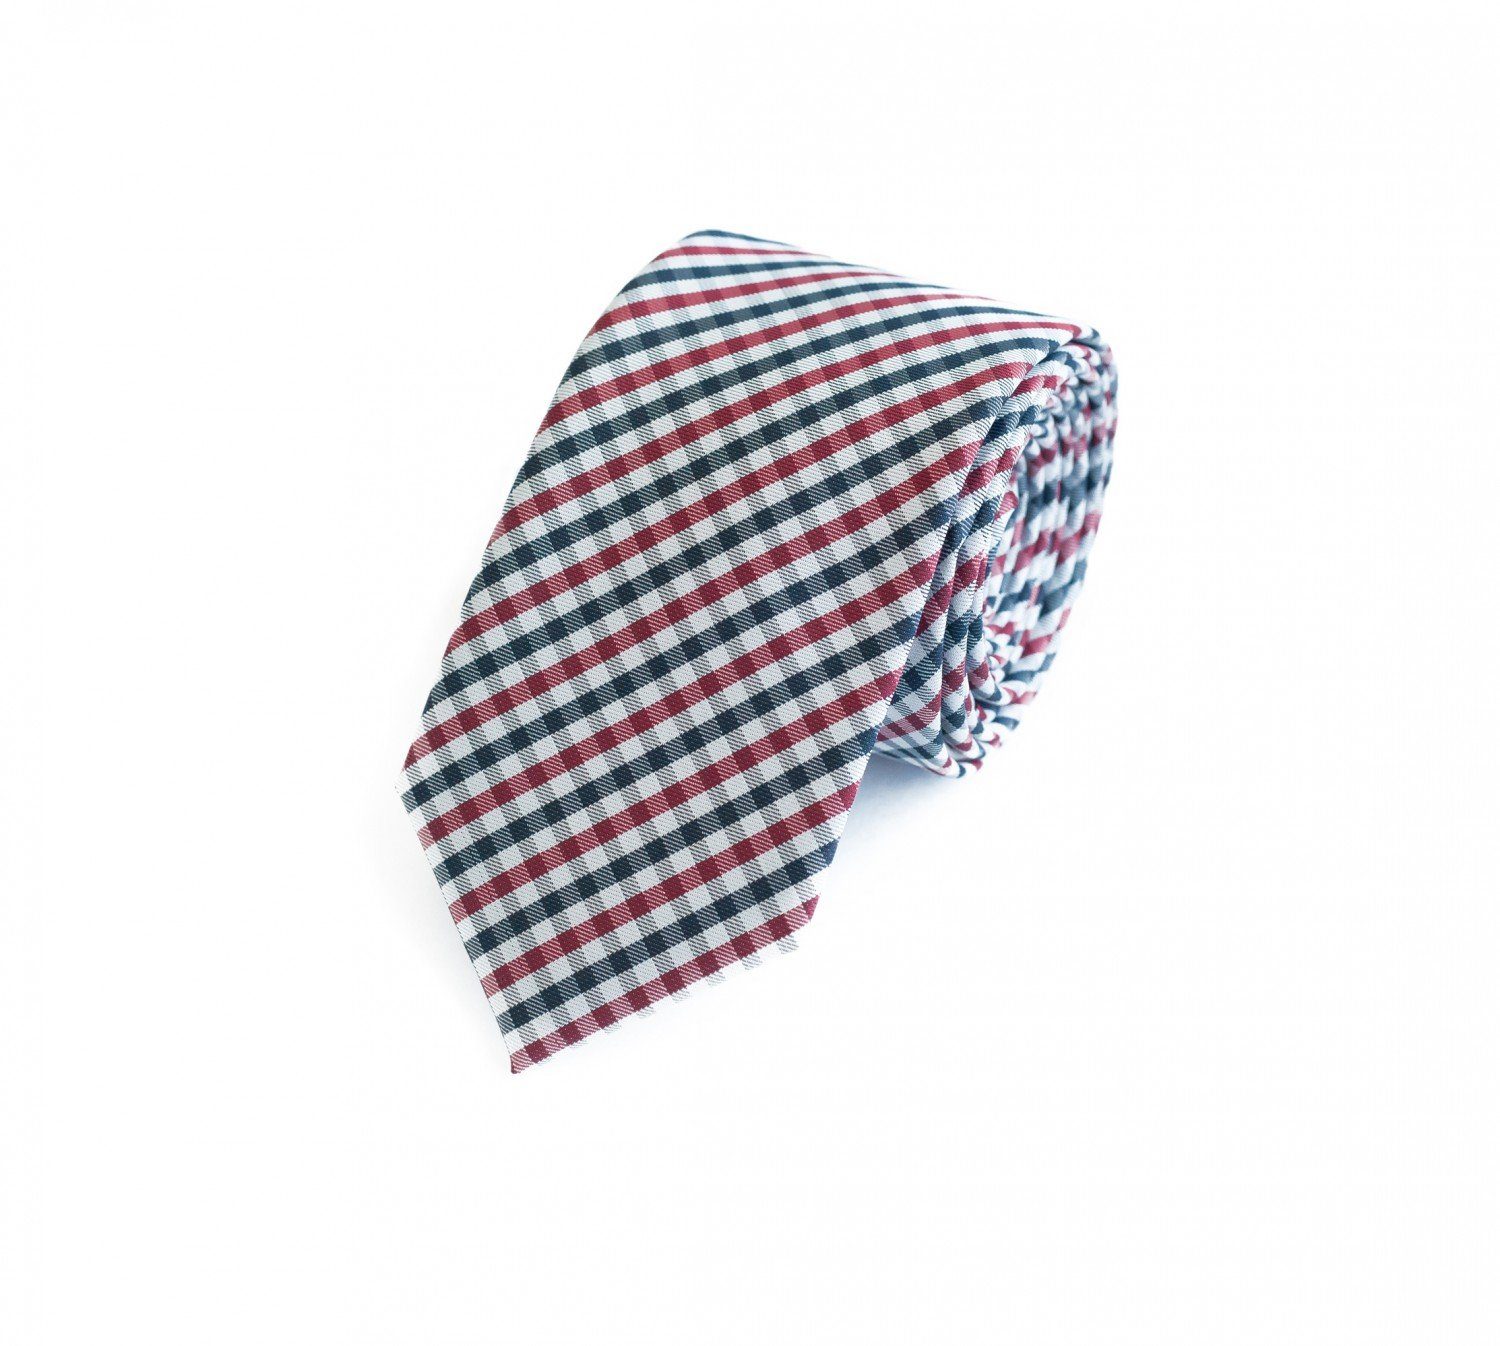 Krawatte Rot/Blau/Weiß Herren karierte Farini - Fabio (ohne Schlips Kariert) in 8cm Breit Krawatte Breite (8cm), Box, 6cm oder